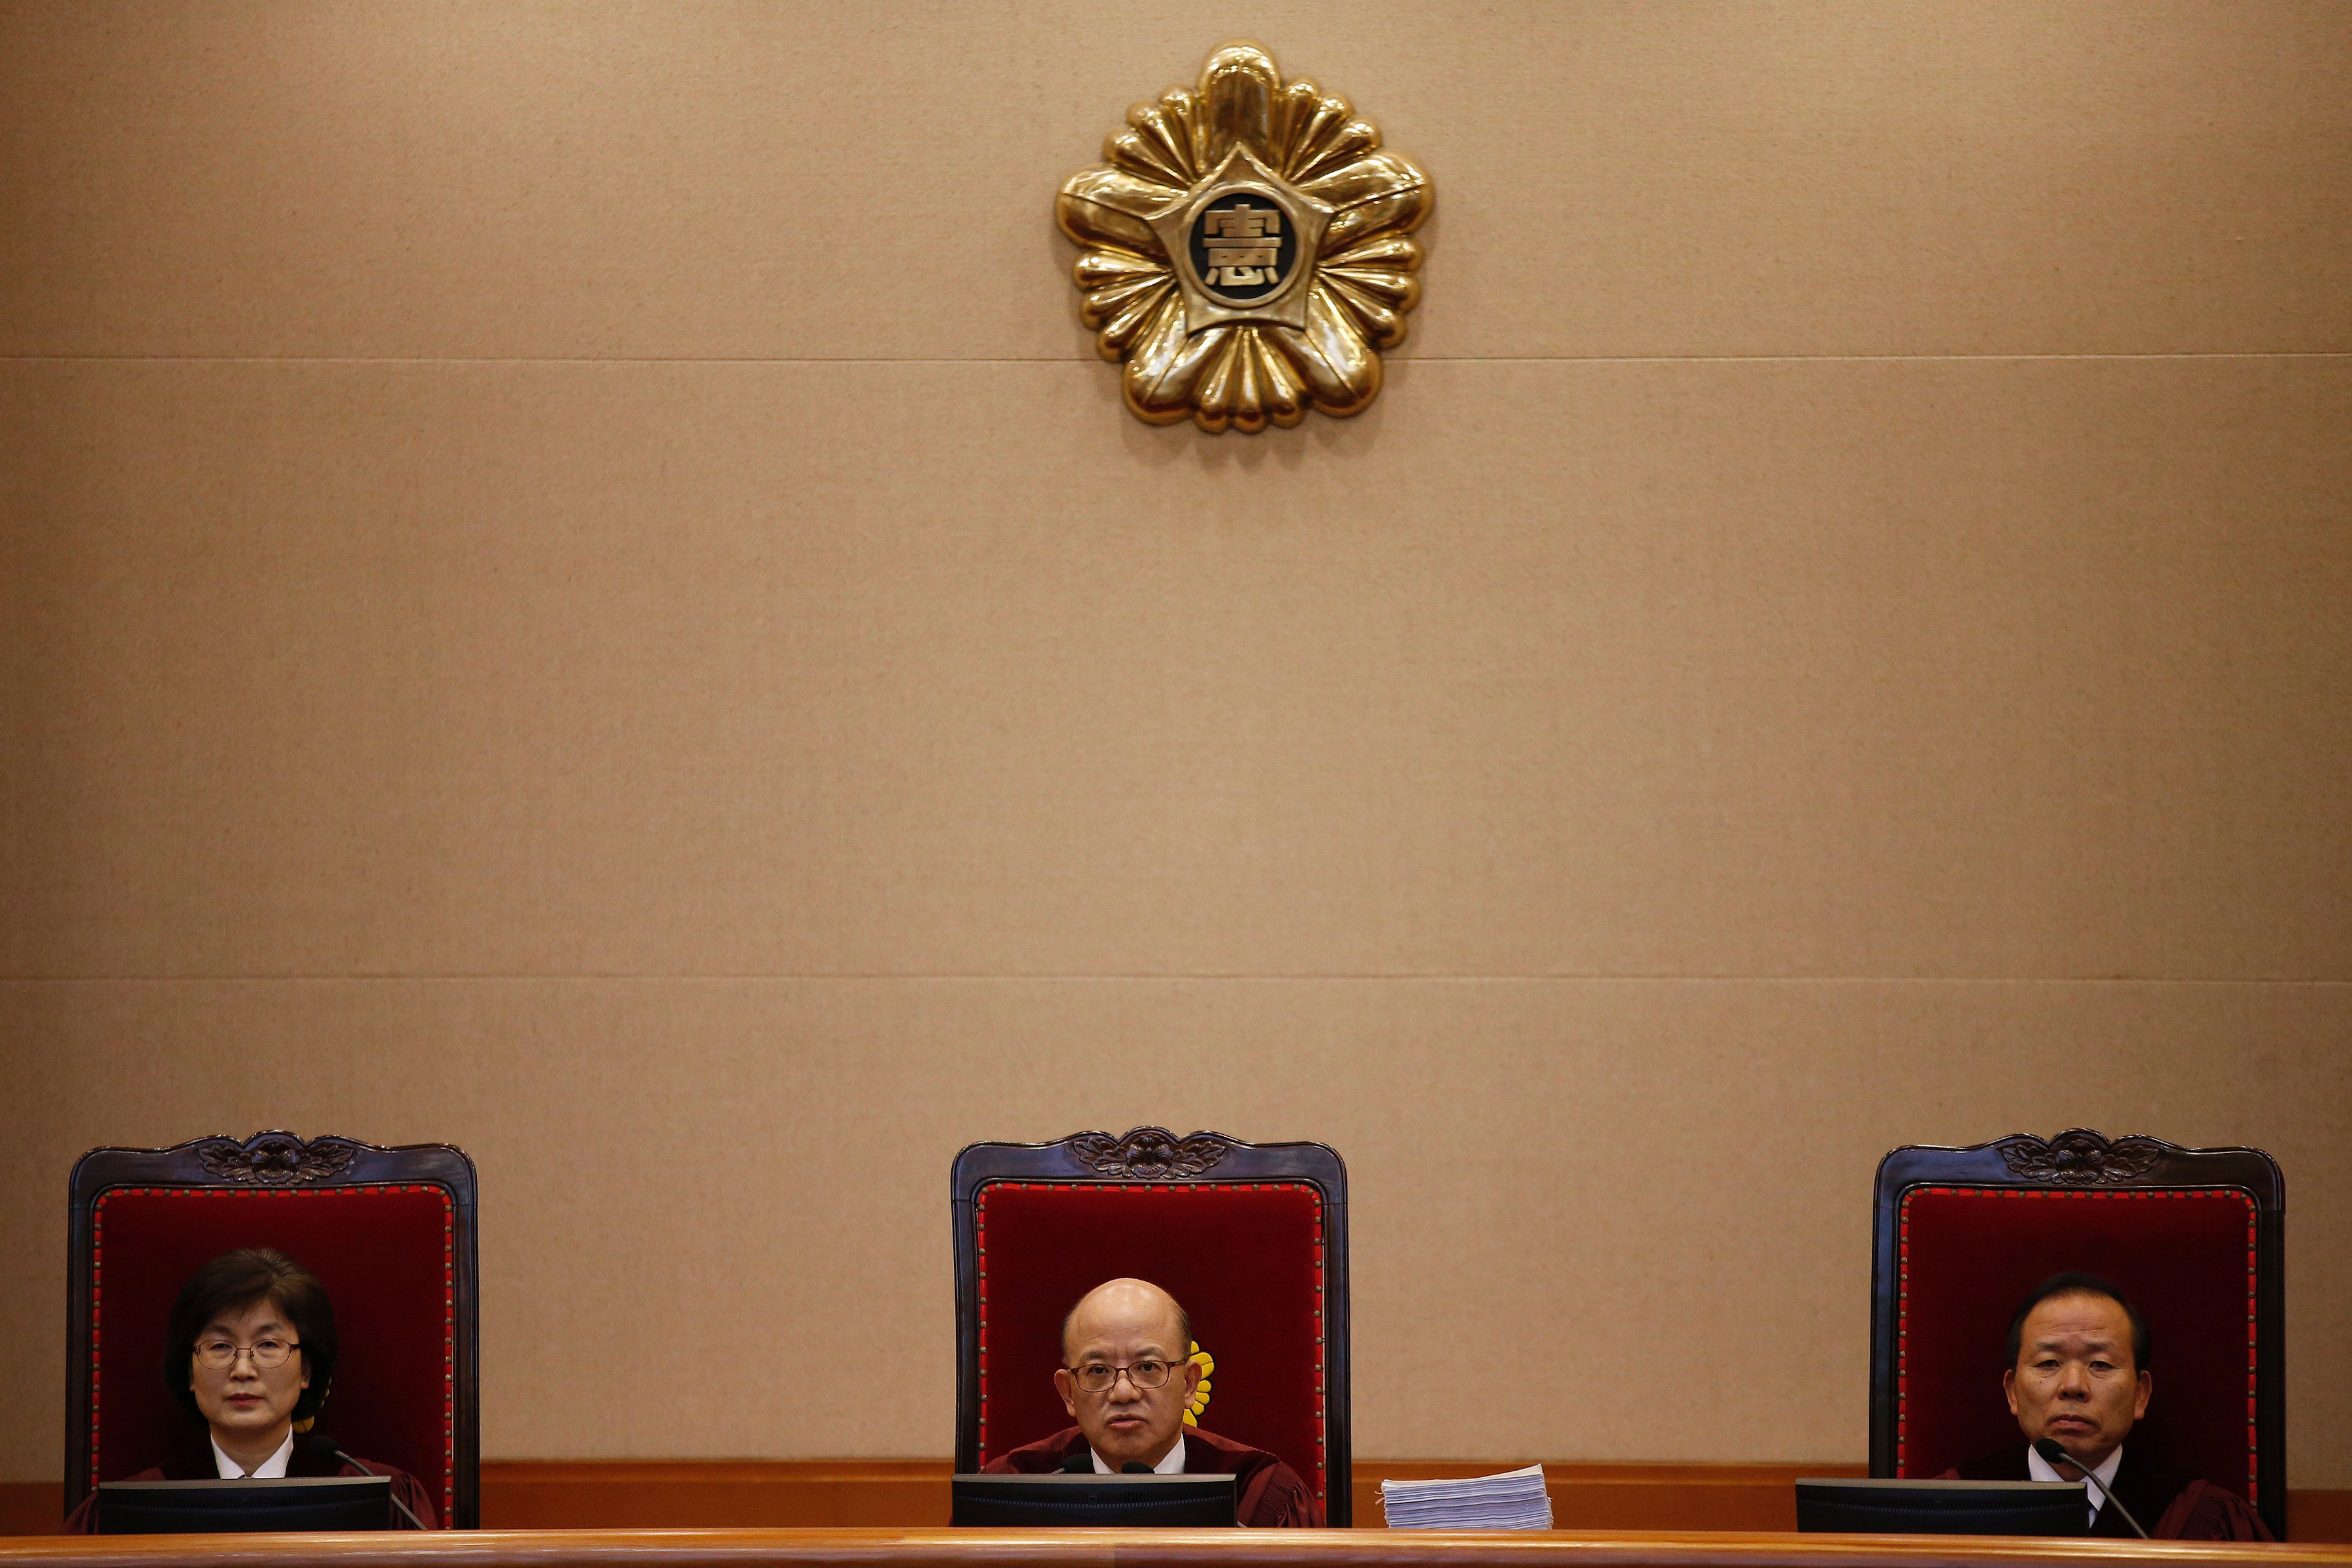 قضاة المحكمة الدستورية الكورية الجنوبية أثناء المحاكمة